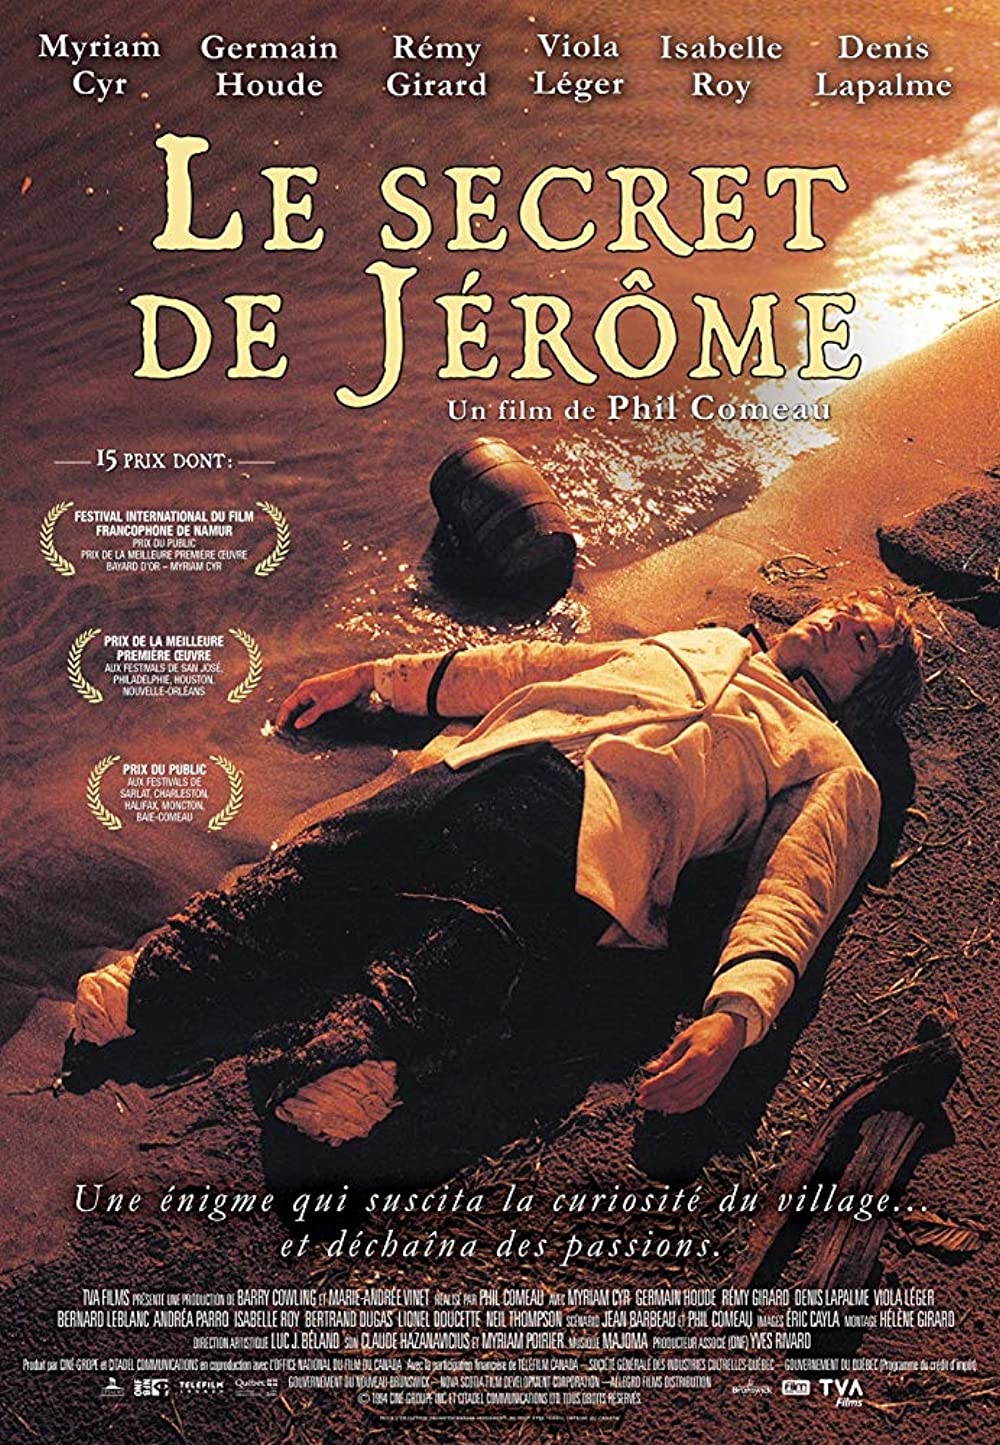 Jerome titka